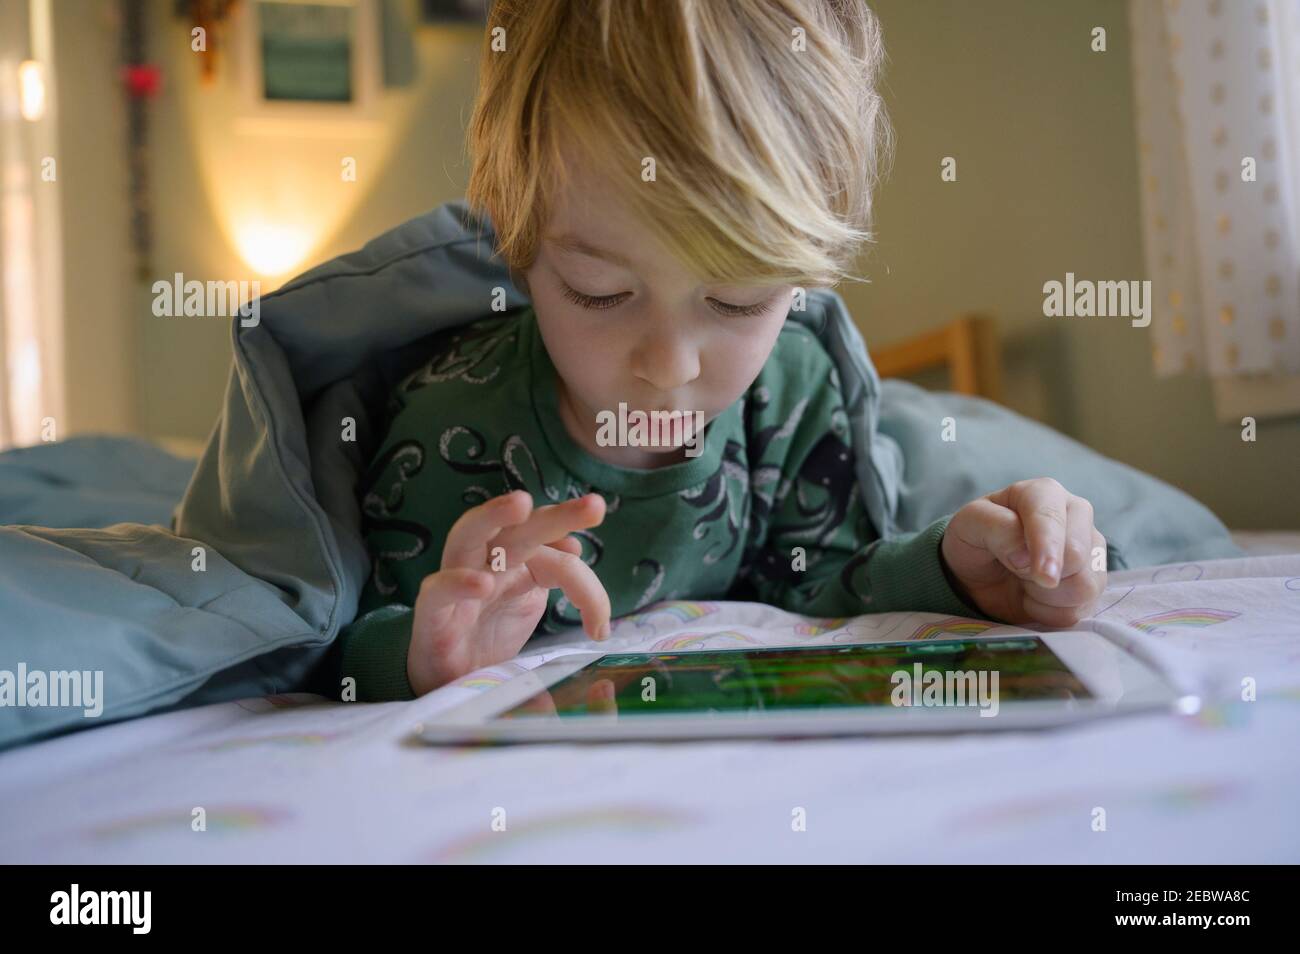 Garçon (6-7) au lit à l'aide d'une tablette numérique Banque D'Images